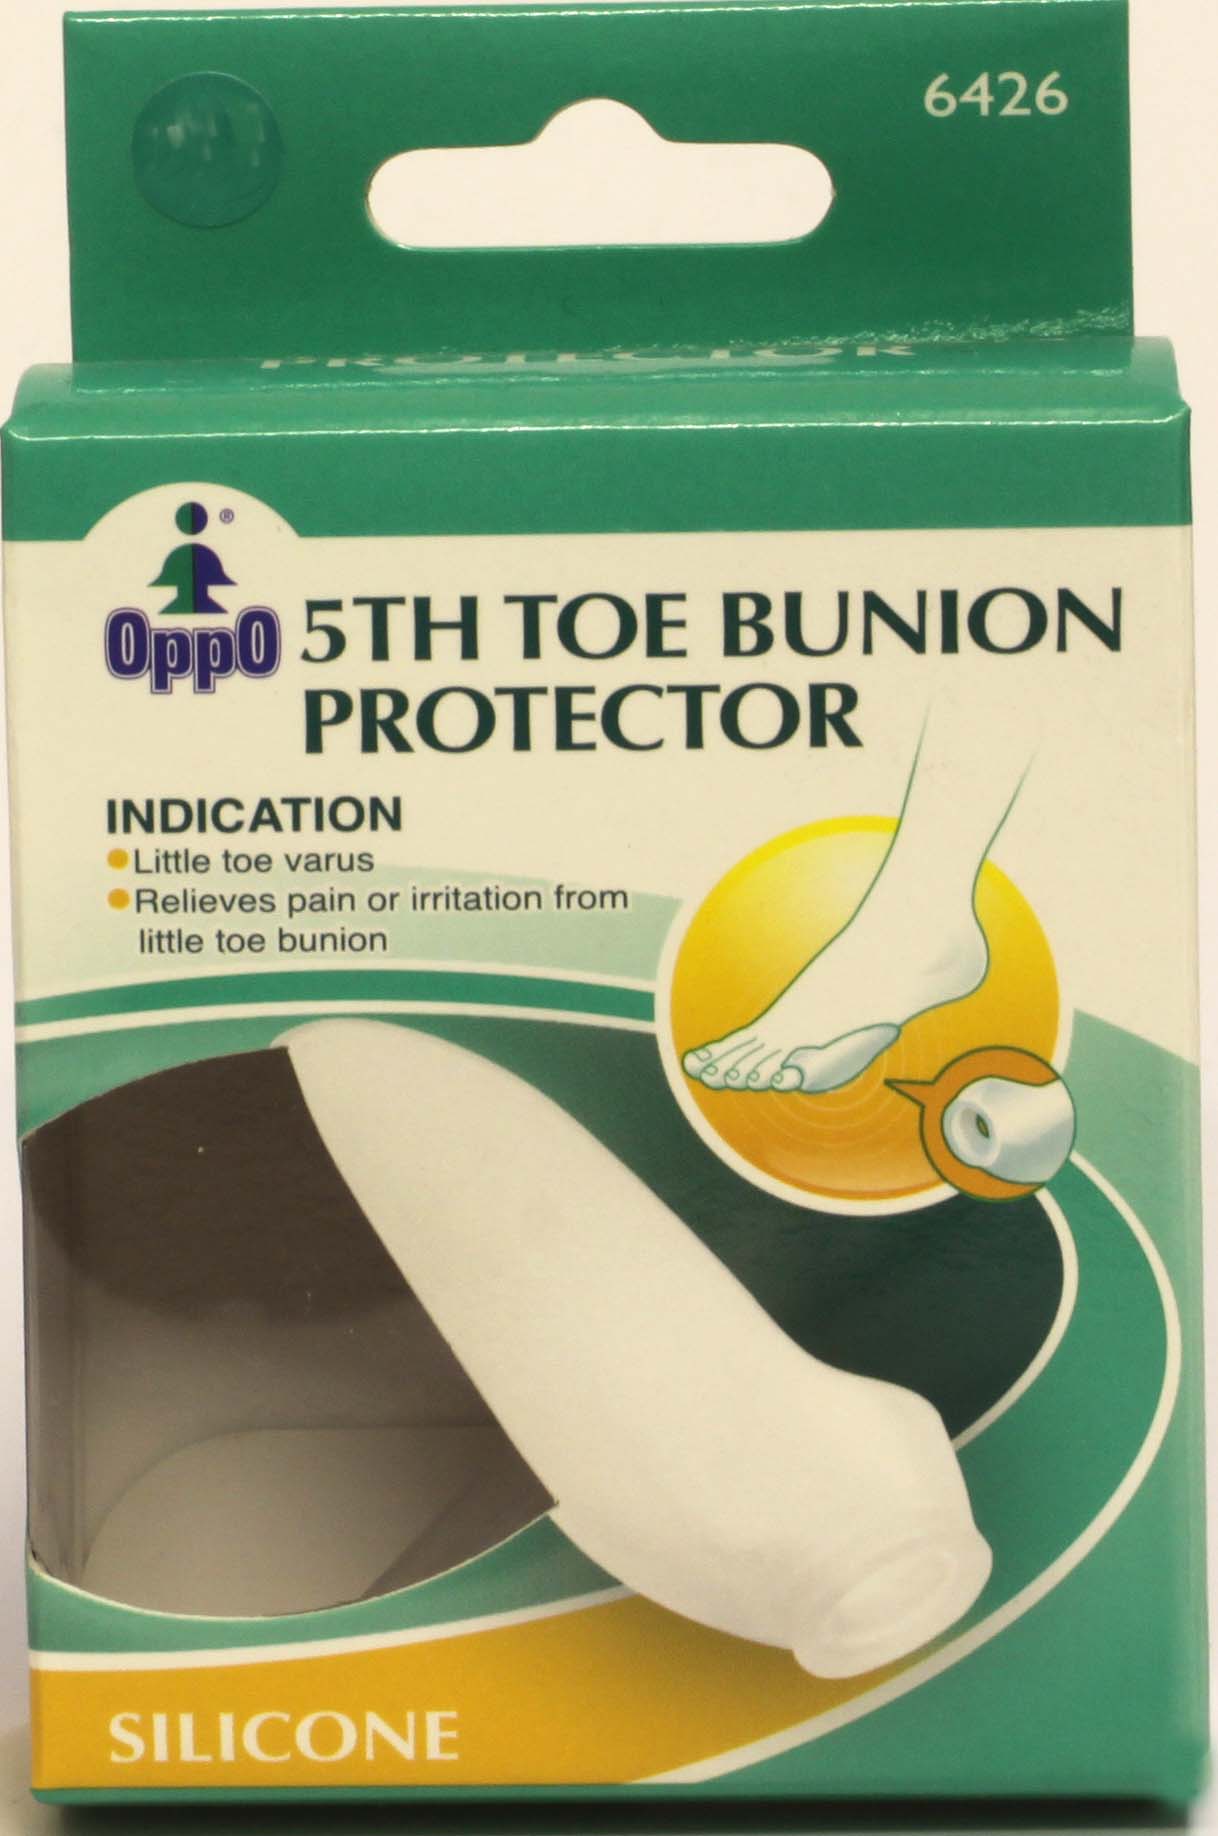 Oppo 5th Toe Bunion Protector L/XL (6426)